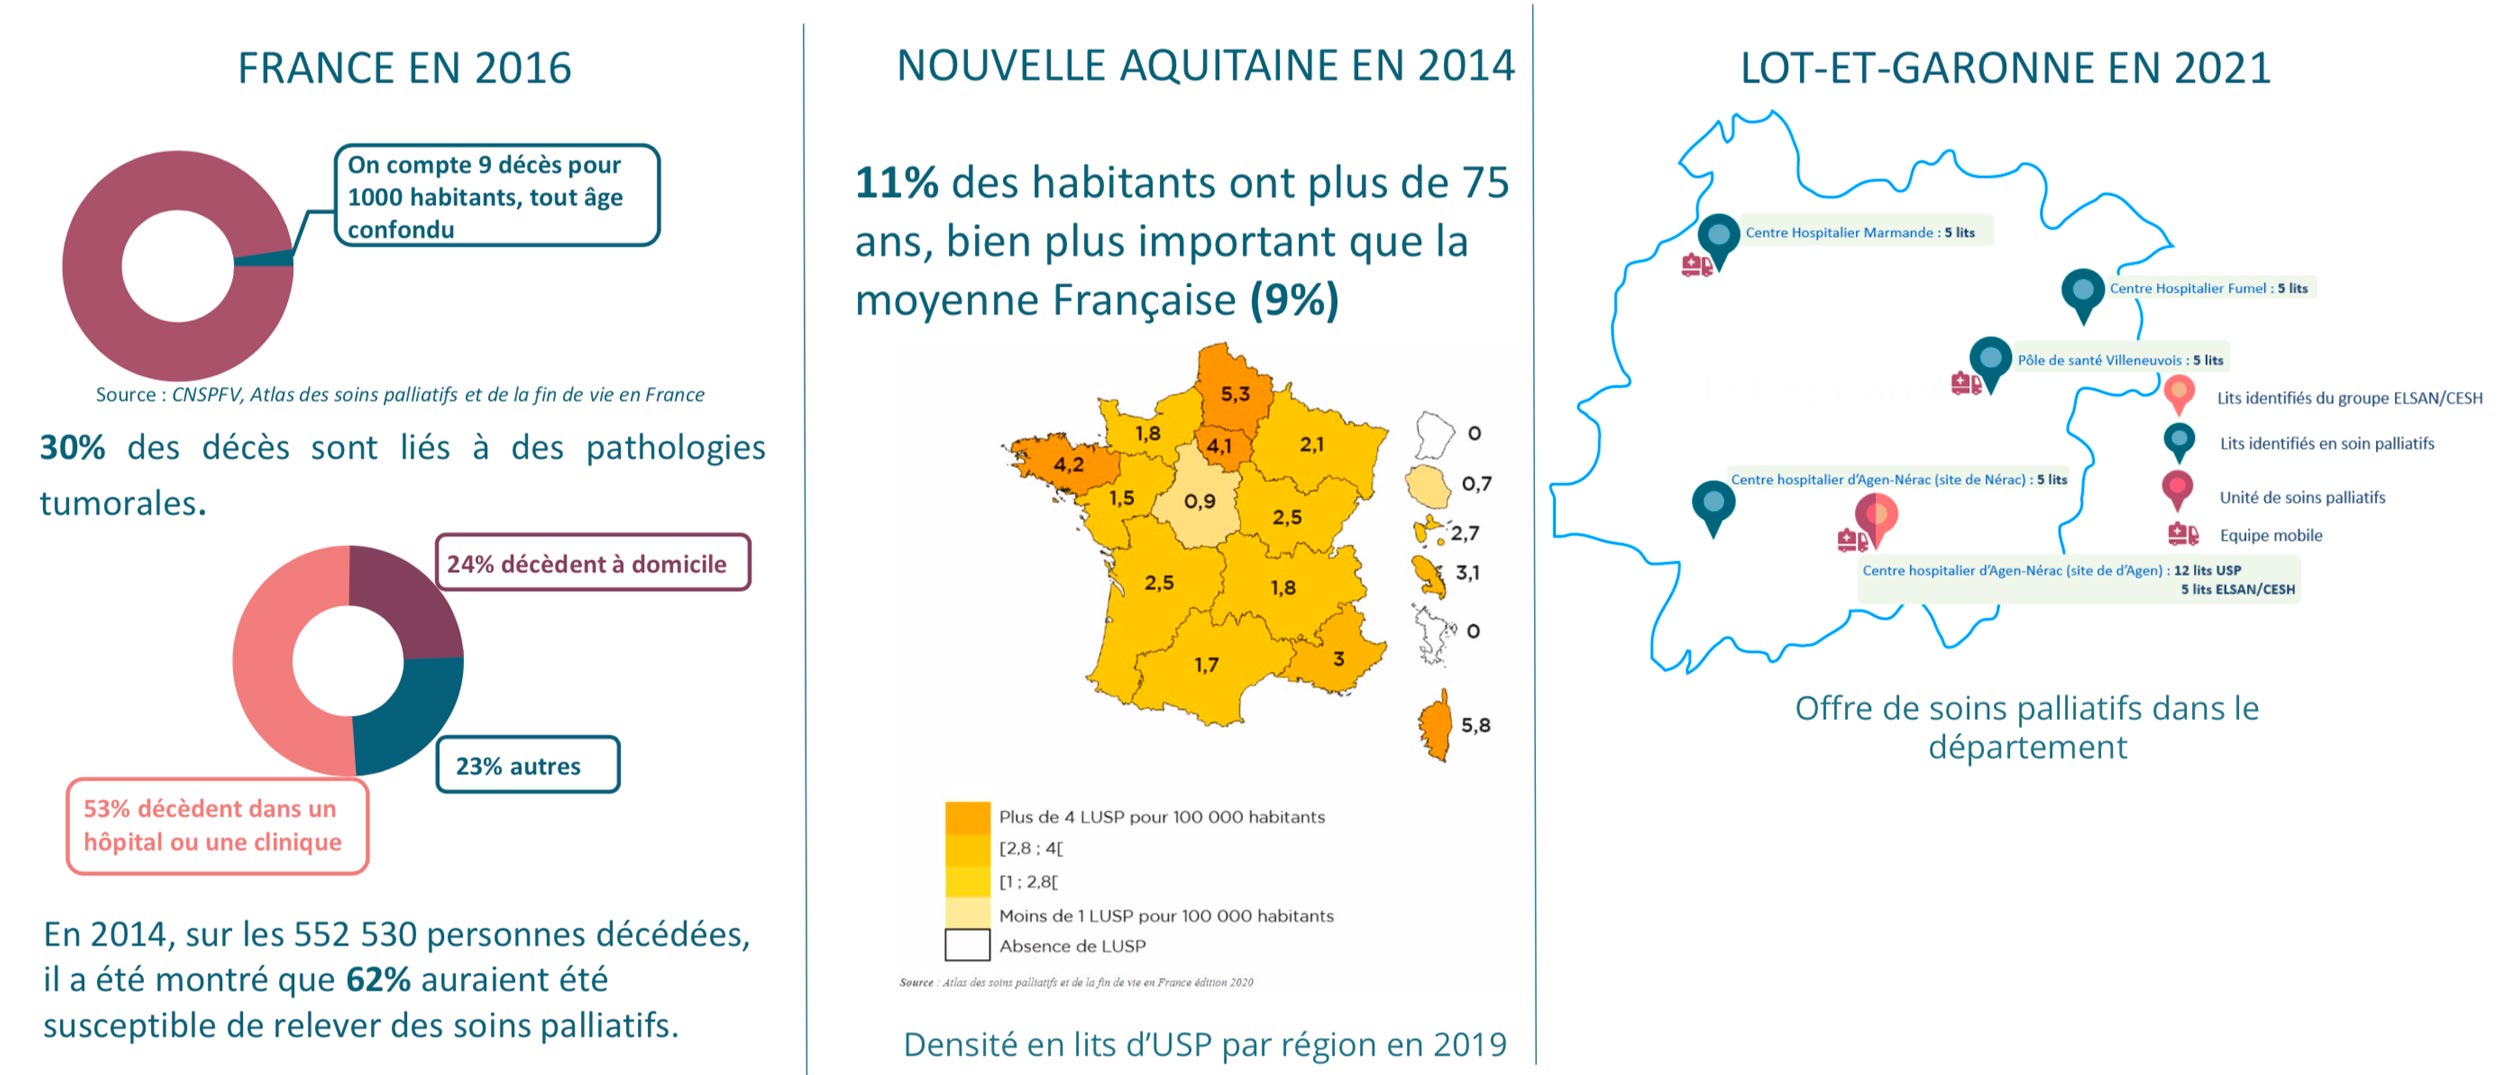 Etats des lieux des soins palliatifs de la France au Lot-et-Garonne